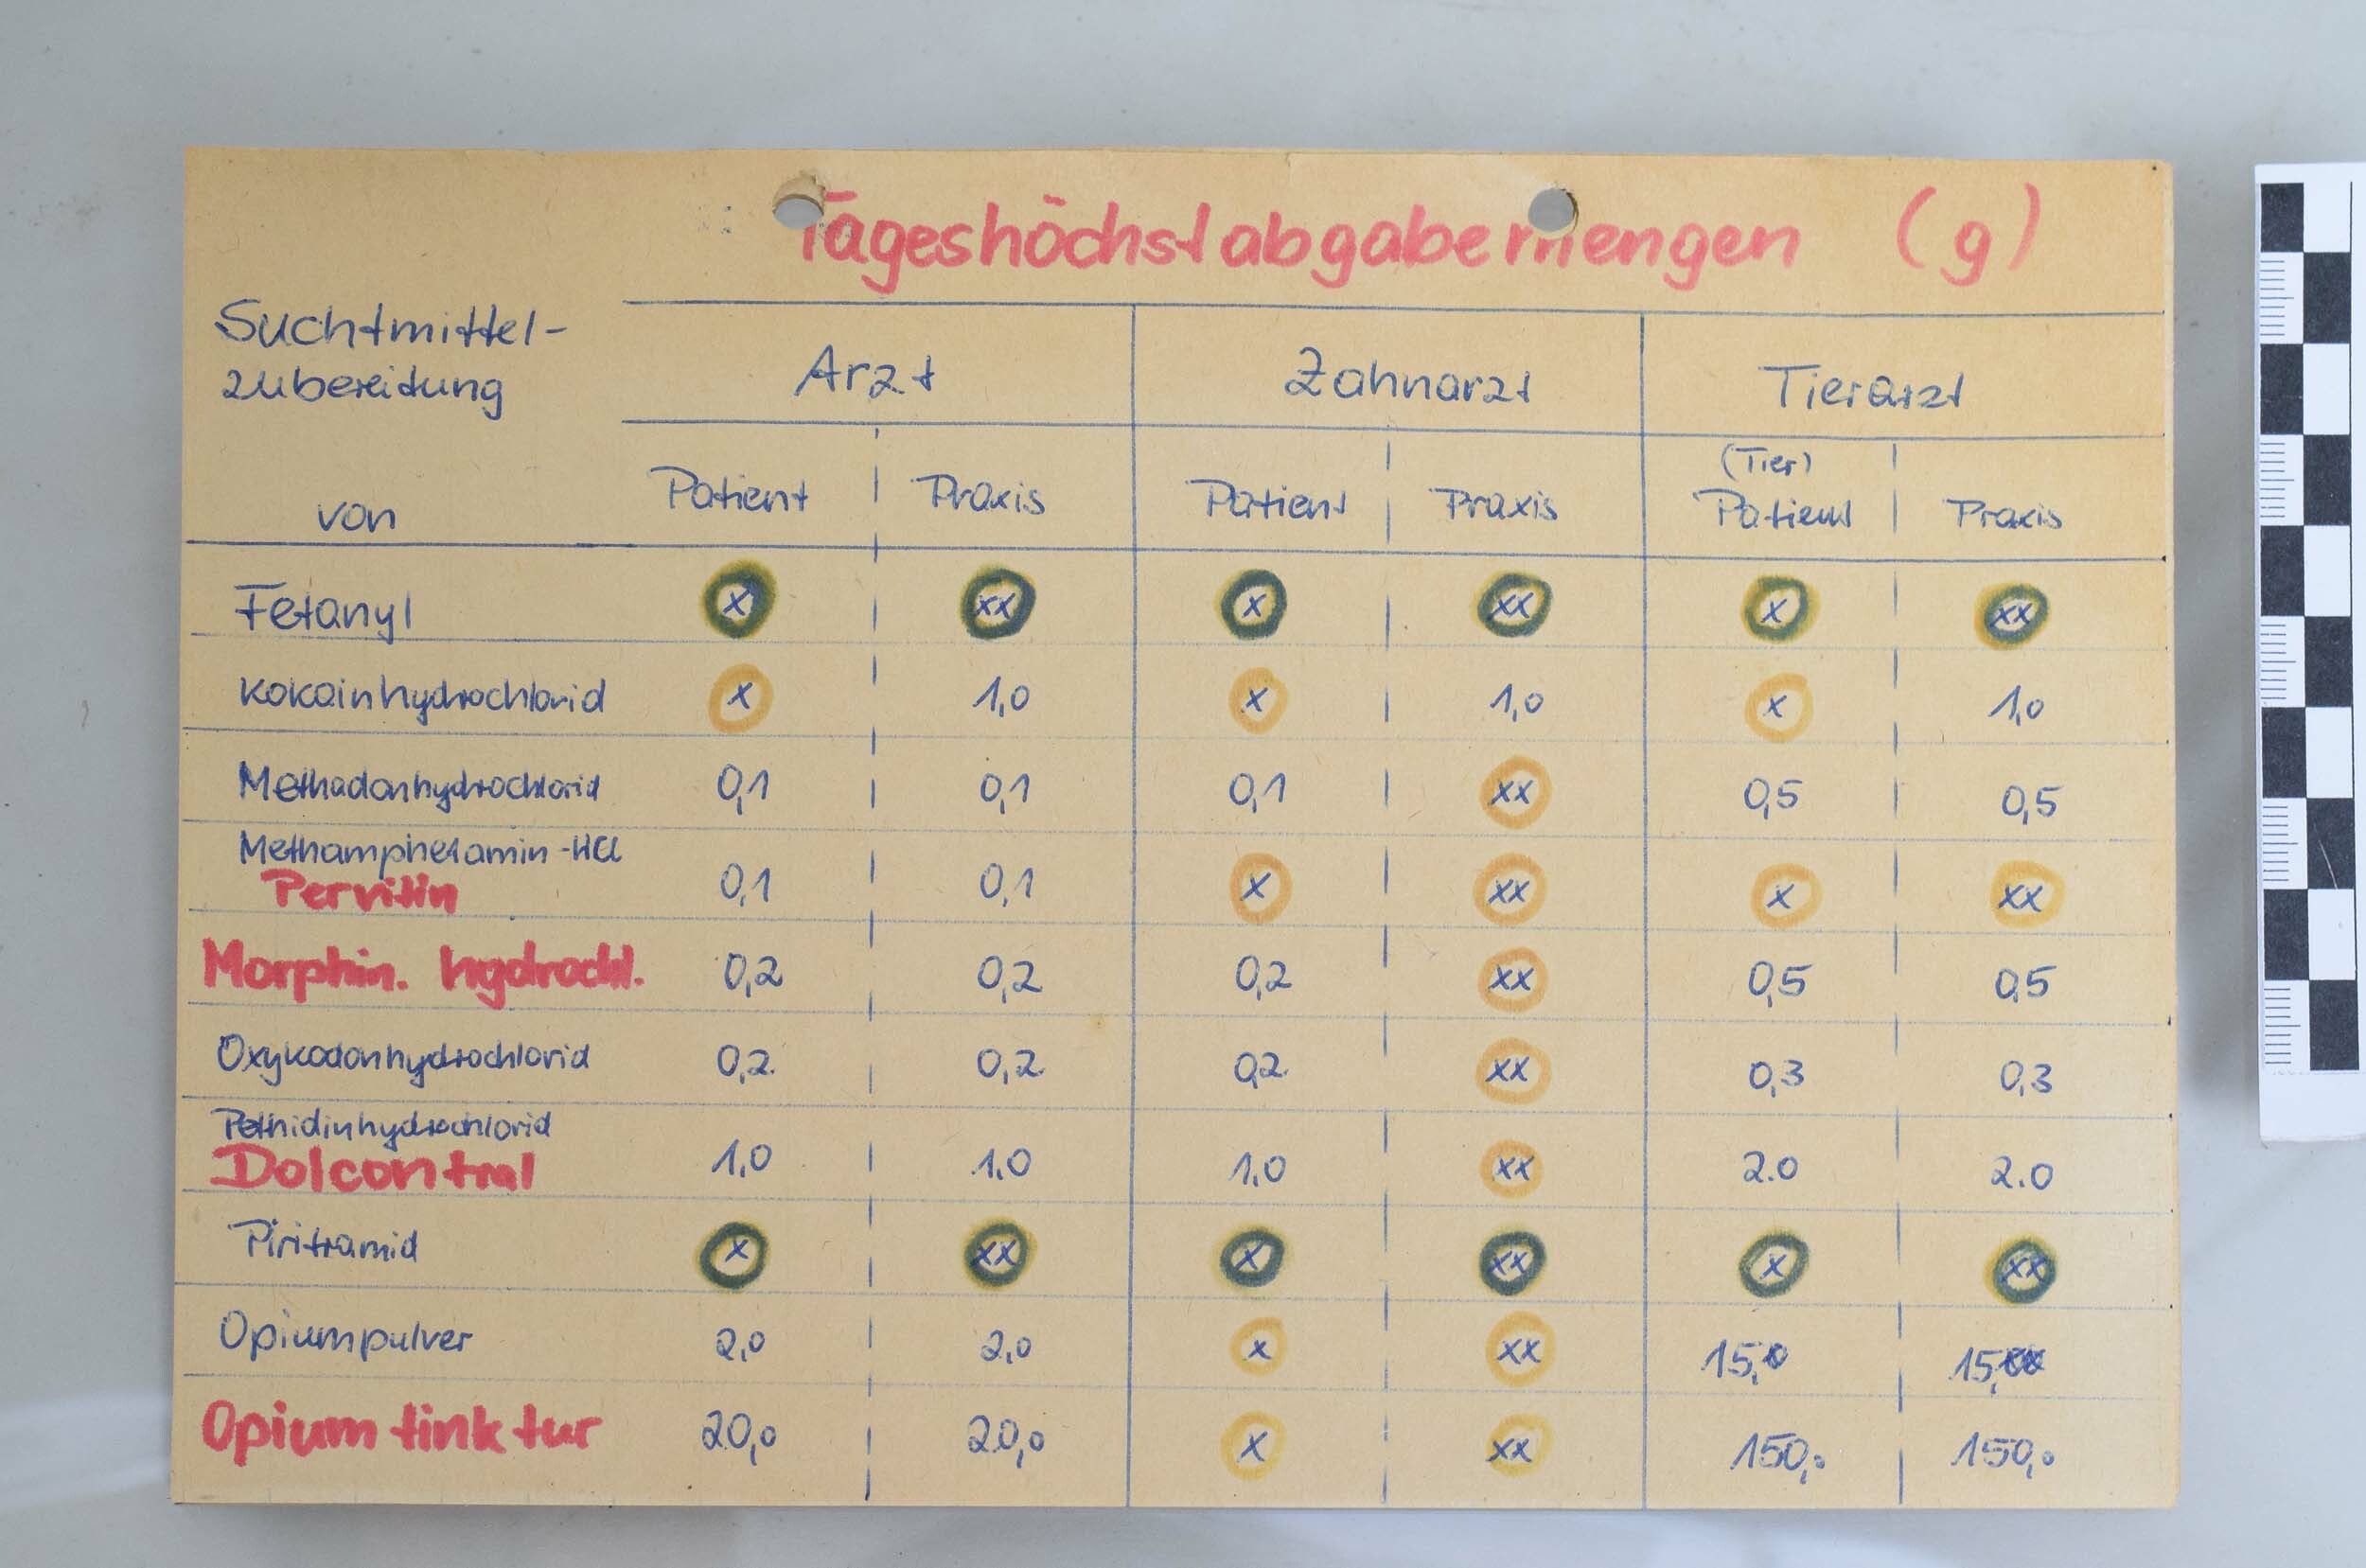 Tabelle mit Tageshöchstabgabemengen für Suchtmittel (Heimatmuseum Dohna CC BY-NC-SA)